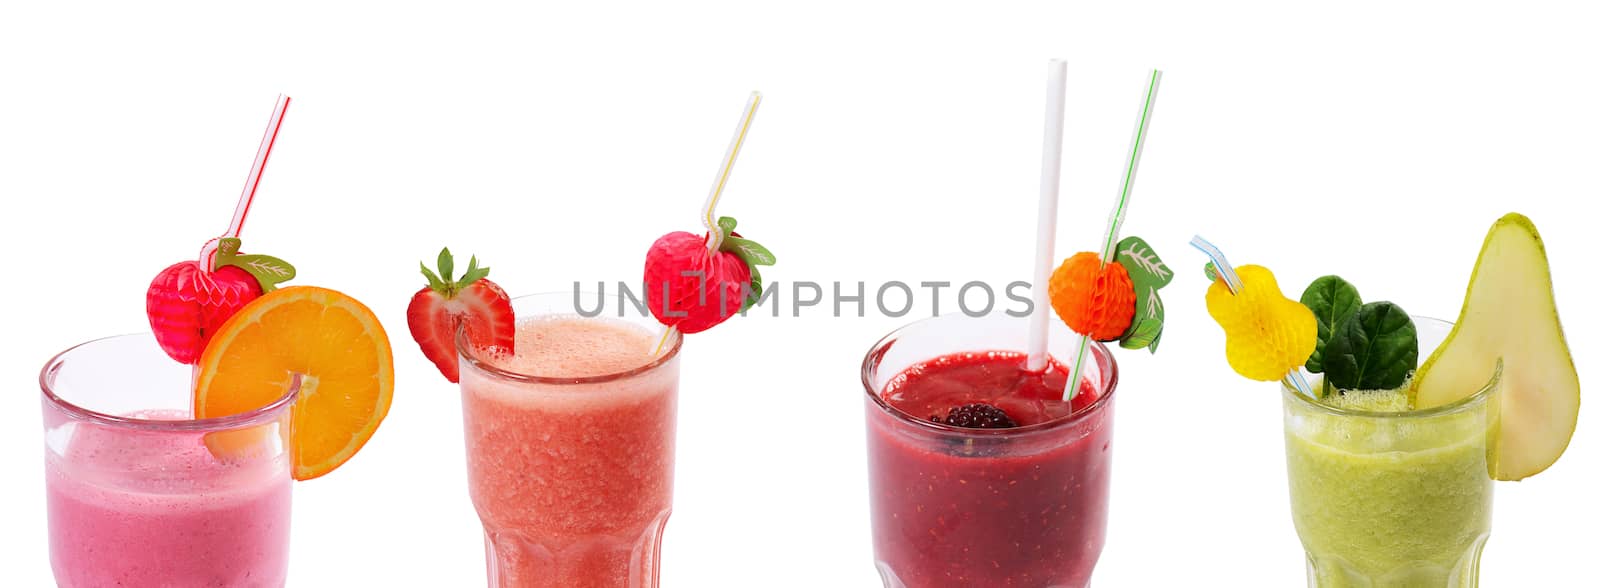 Freshening strawberry smoothie  isolated on white background